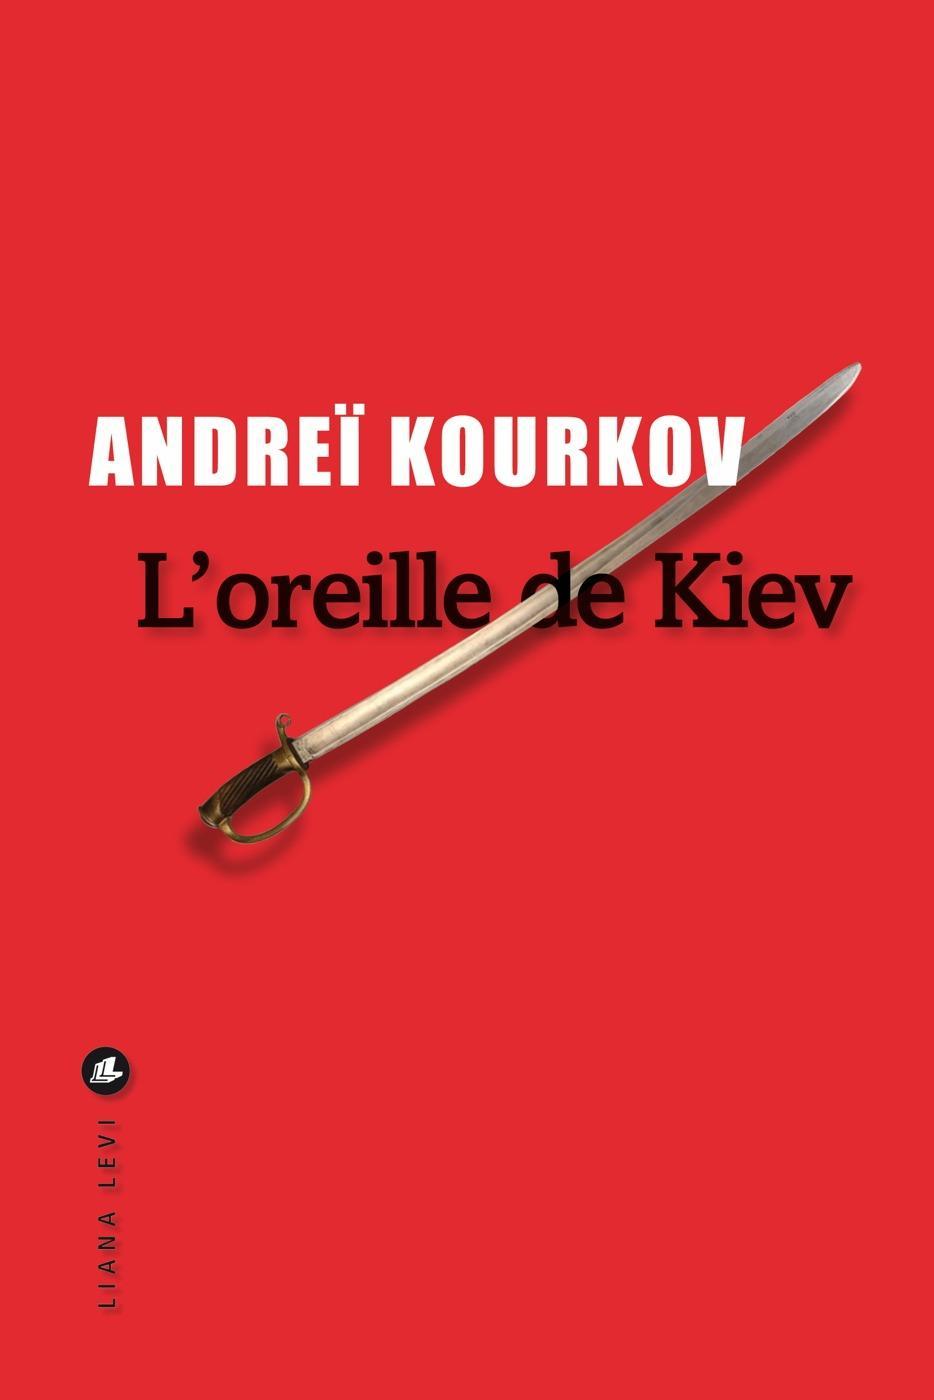 Andrey Kurkov: L'oreille de Kiev (French language, 2022, Éditions Liana Levi)